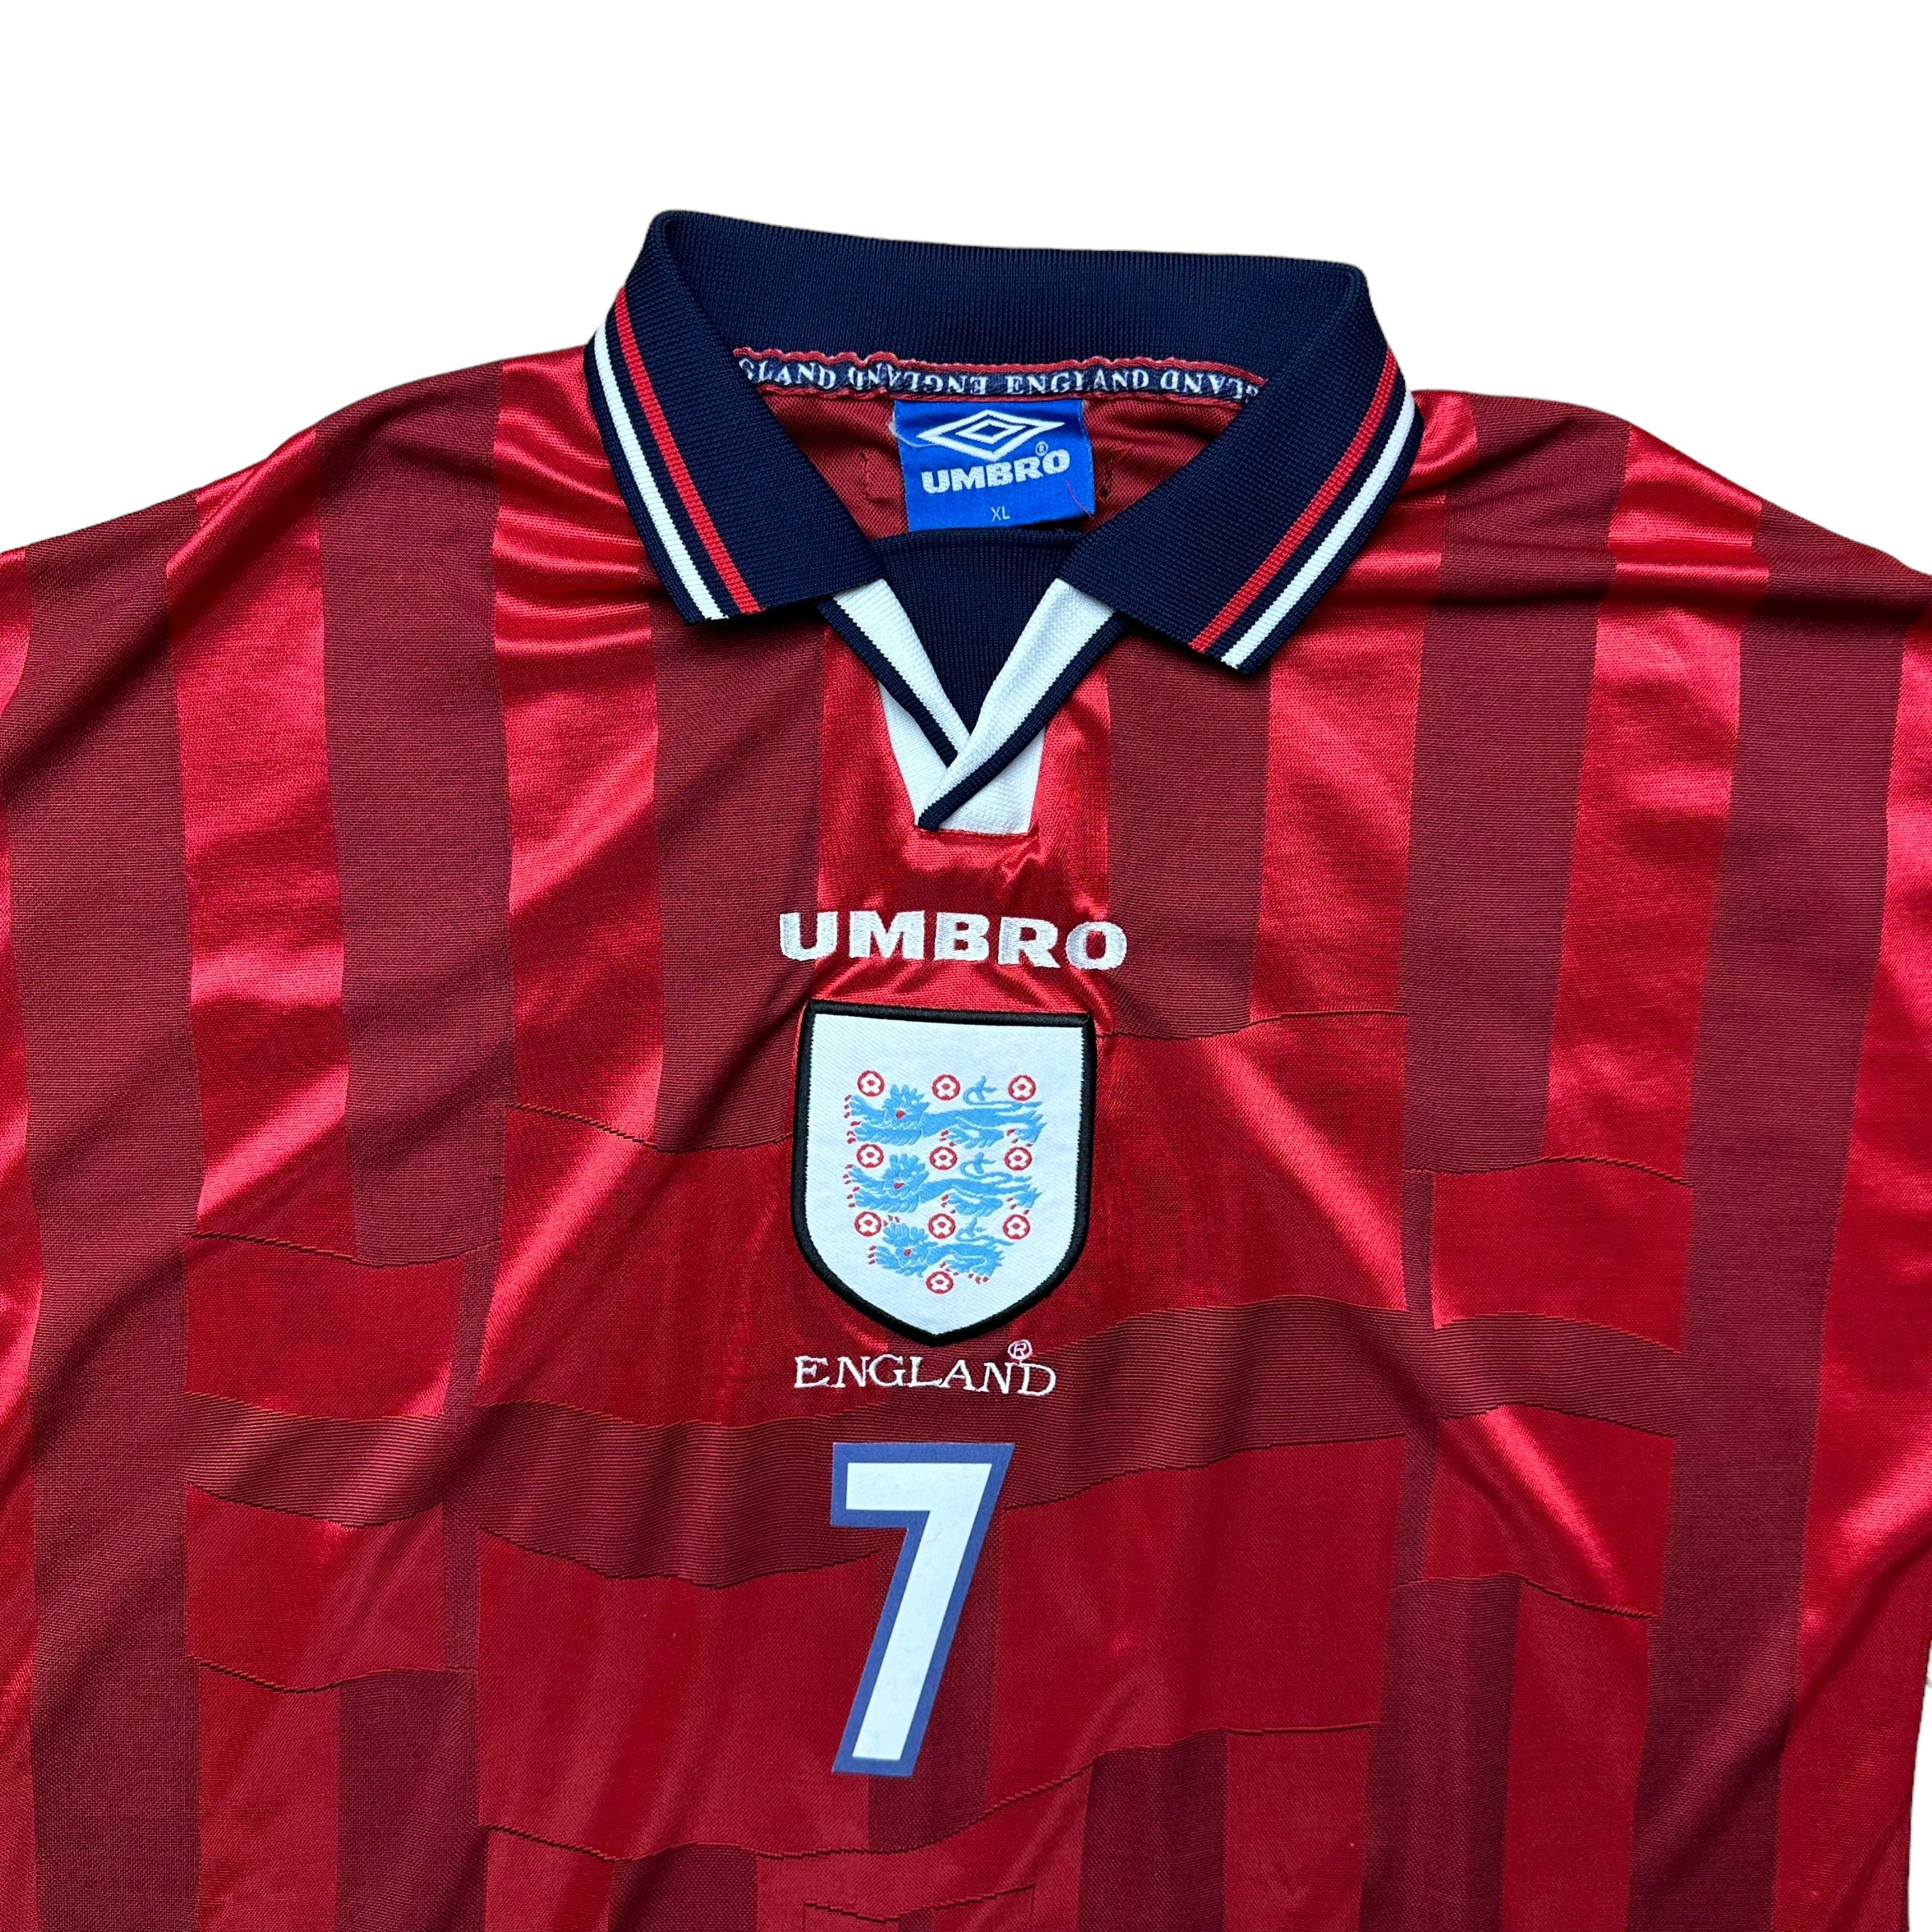 England 1998 Away Shirt (XL) Beckham #7